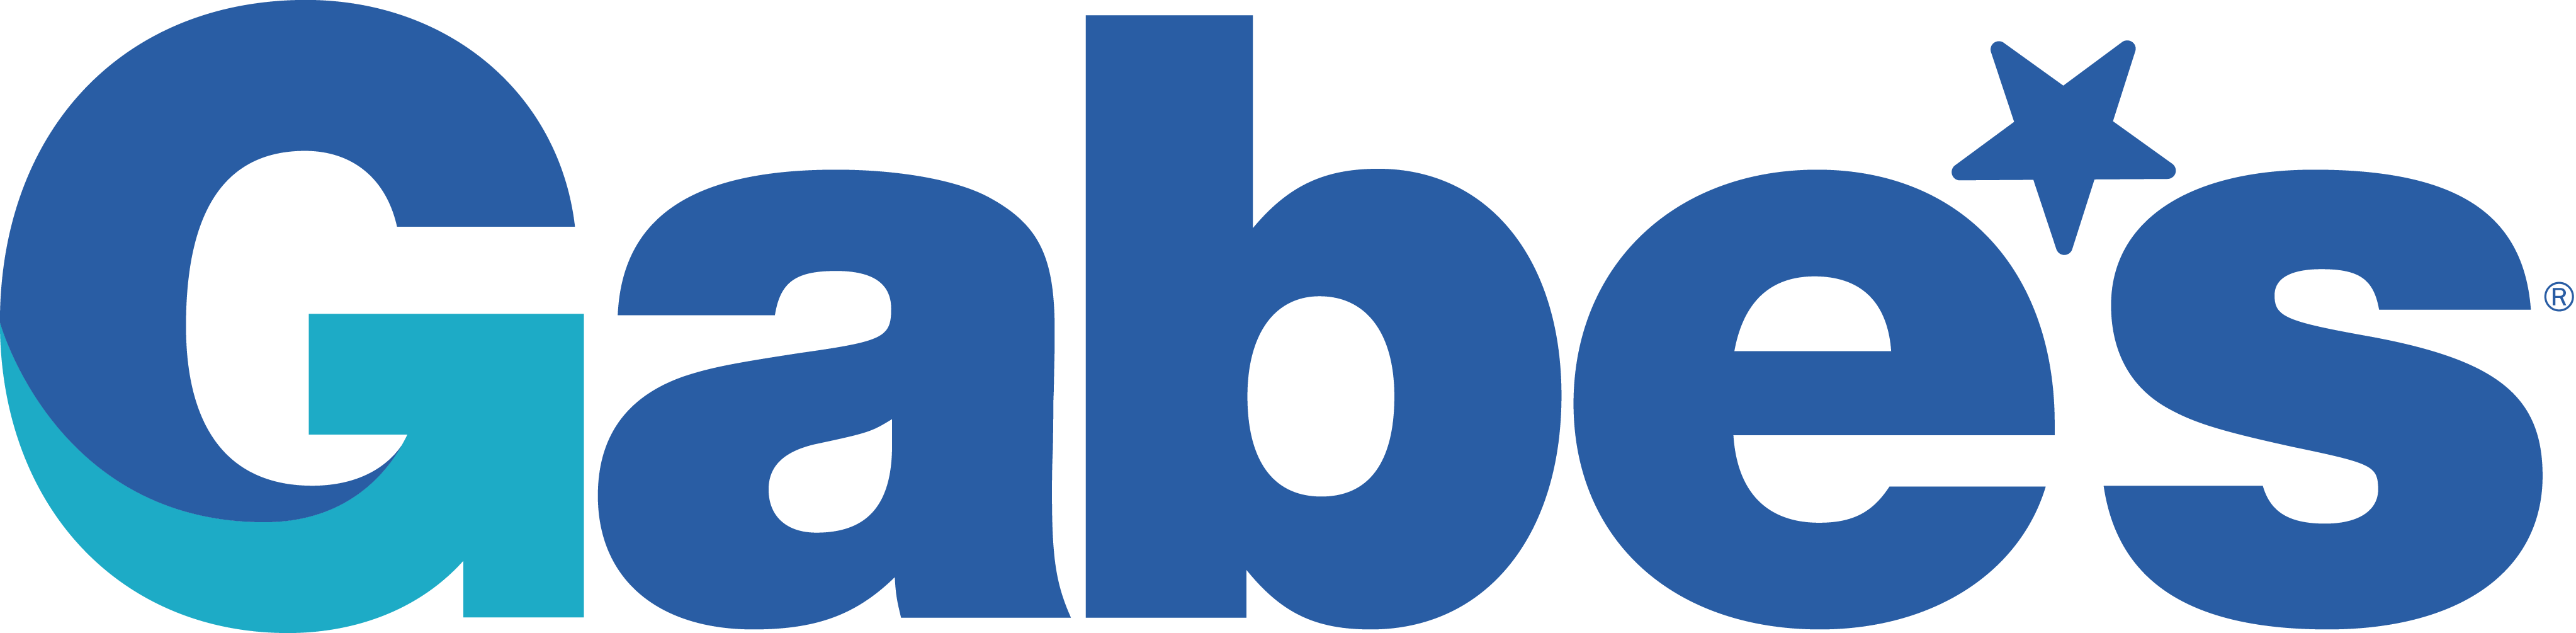 Gabe's_logo